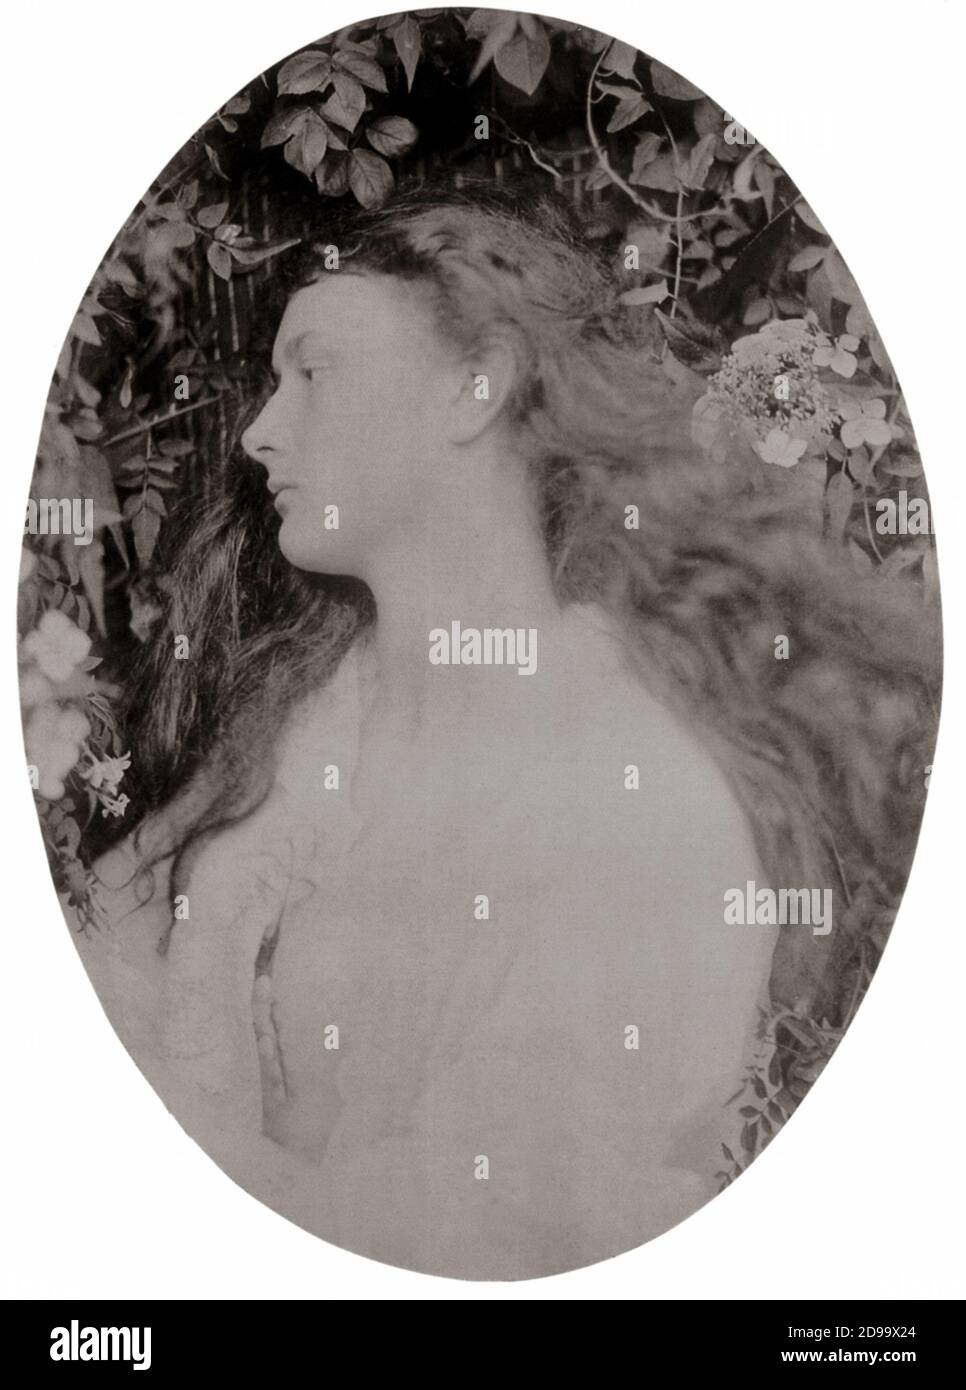 1872 , GRAN BRETAGNA : Alice Liddell come ritratto di Pomona della fotografa prerogaellita Julia Margaret Cameron . Alice fu il modello della piccola Muse per ALICE NEL PAESE DELLE MERAVIGLIE - 1865 dal fotografo, matematico e scrittore LEWIS CARROLL ( nato Charles Lutwidge Dodgson , 1832 - 1898 ) - LETTERATURA - LETTERATURA - SCRITTORE - bambina - ritratto - bambino - PRERAFFAELLITA - PRERAFFAELLISMO ----- Archivio GBB Foto Stock